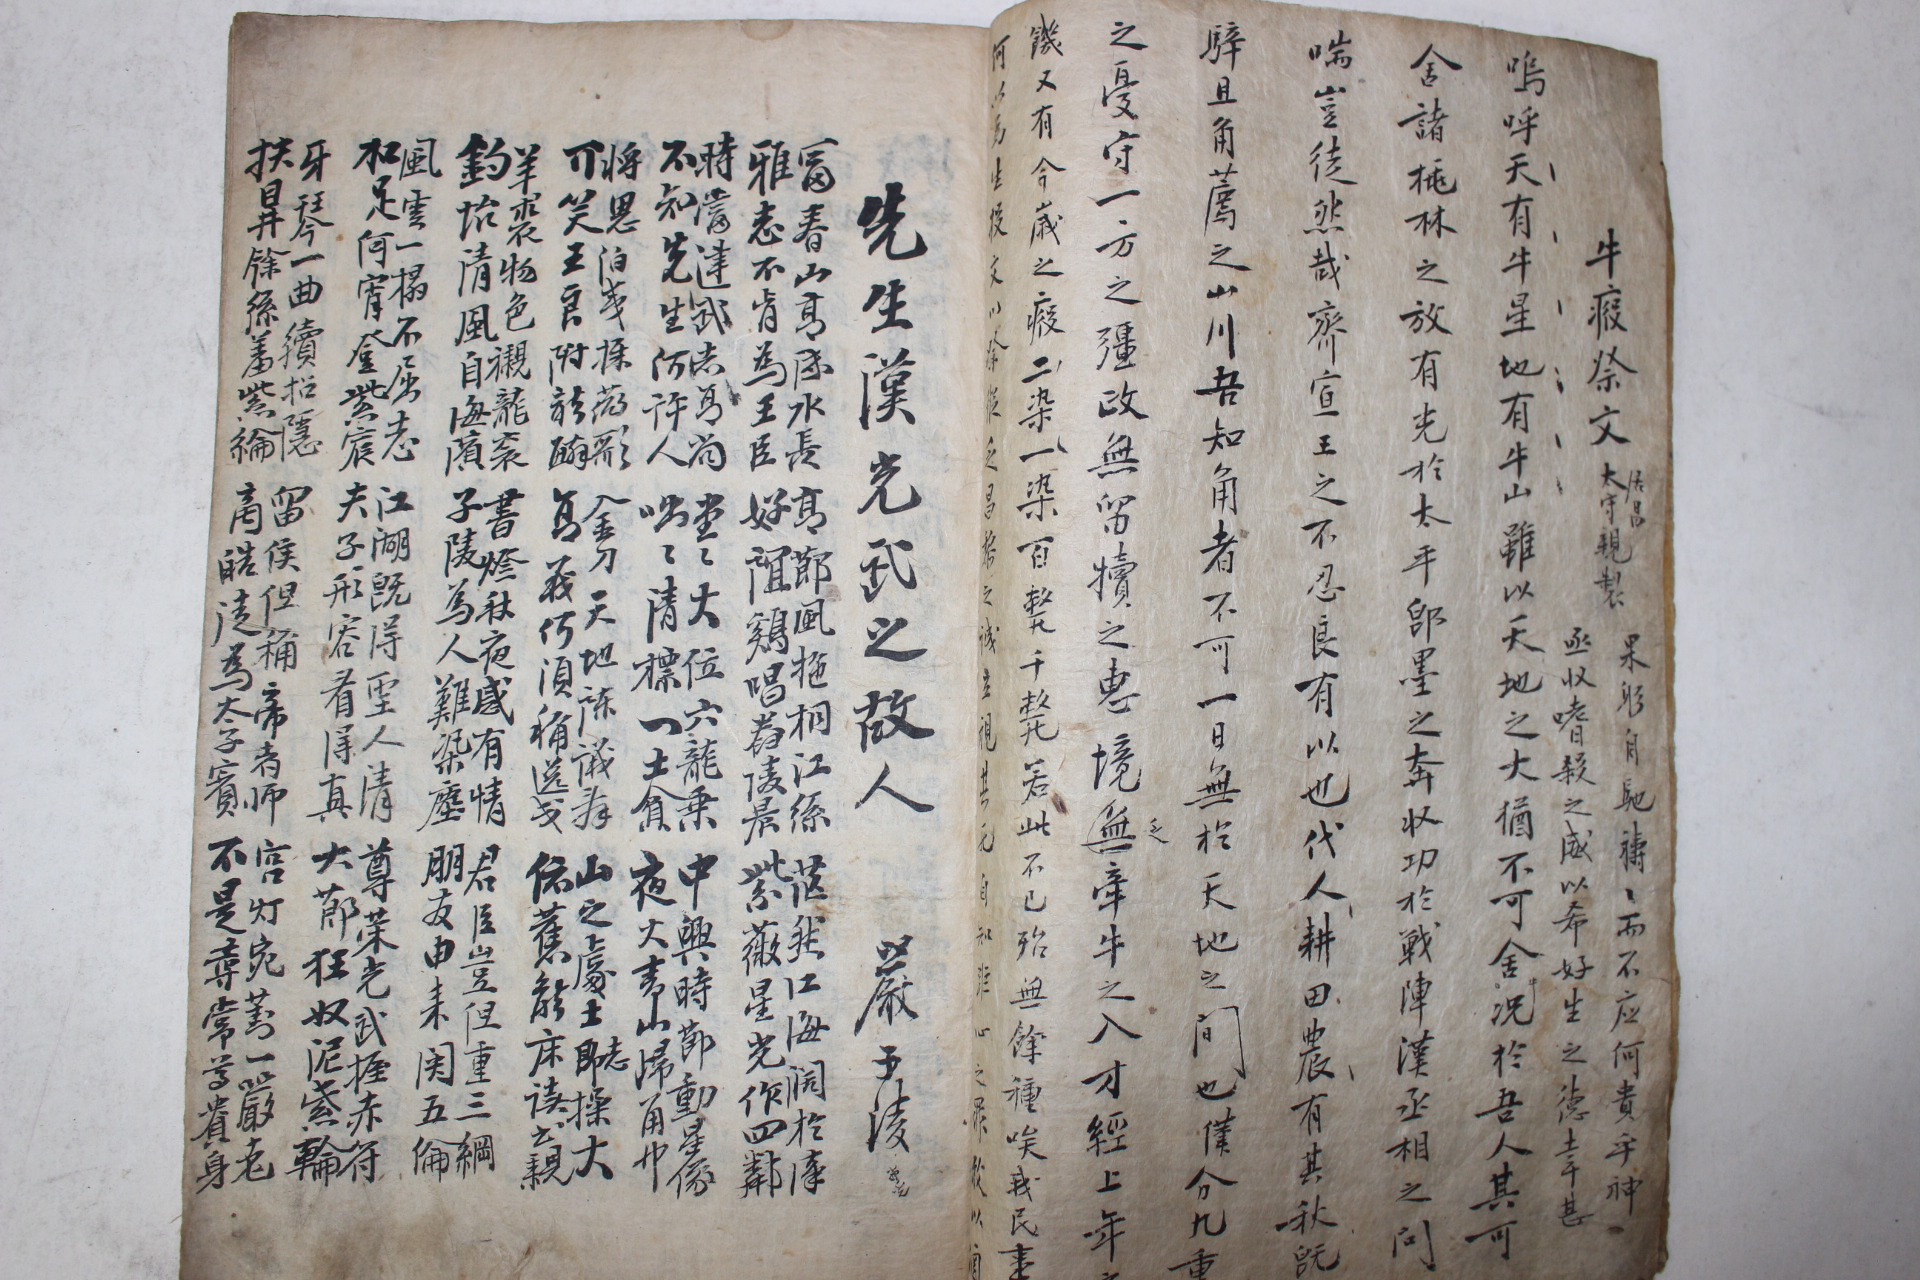 조선시대 고필사본 국한문혼용 청루가수록 1책